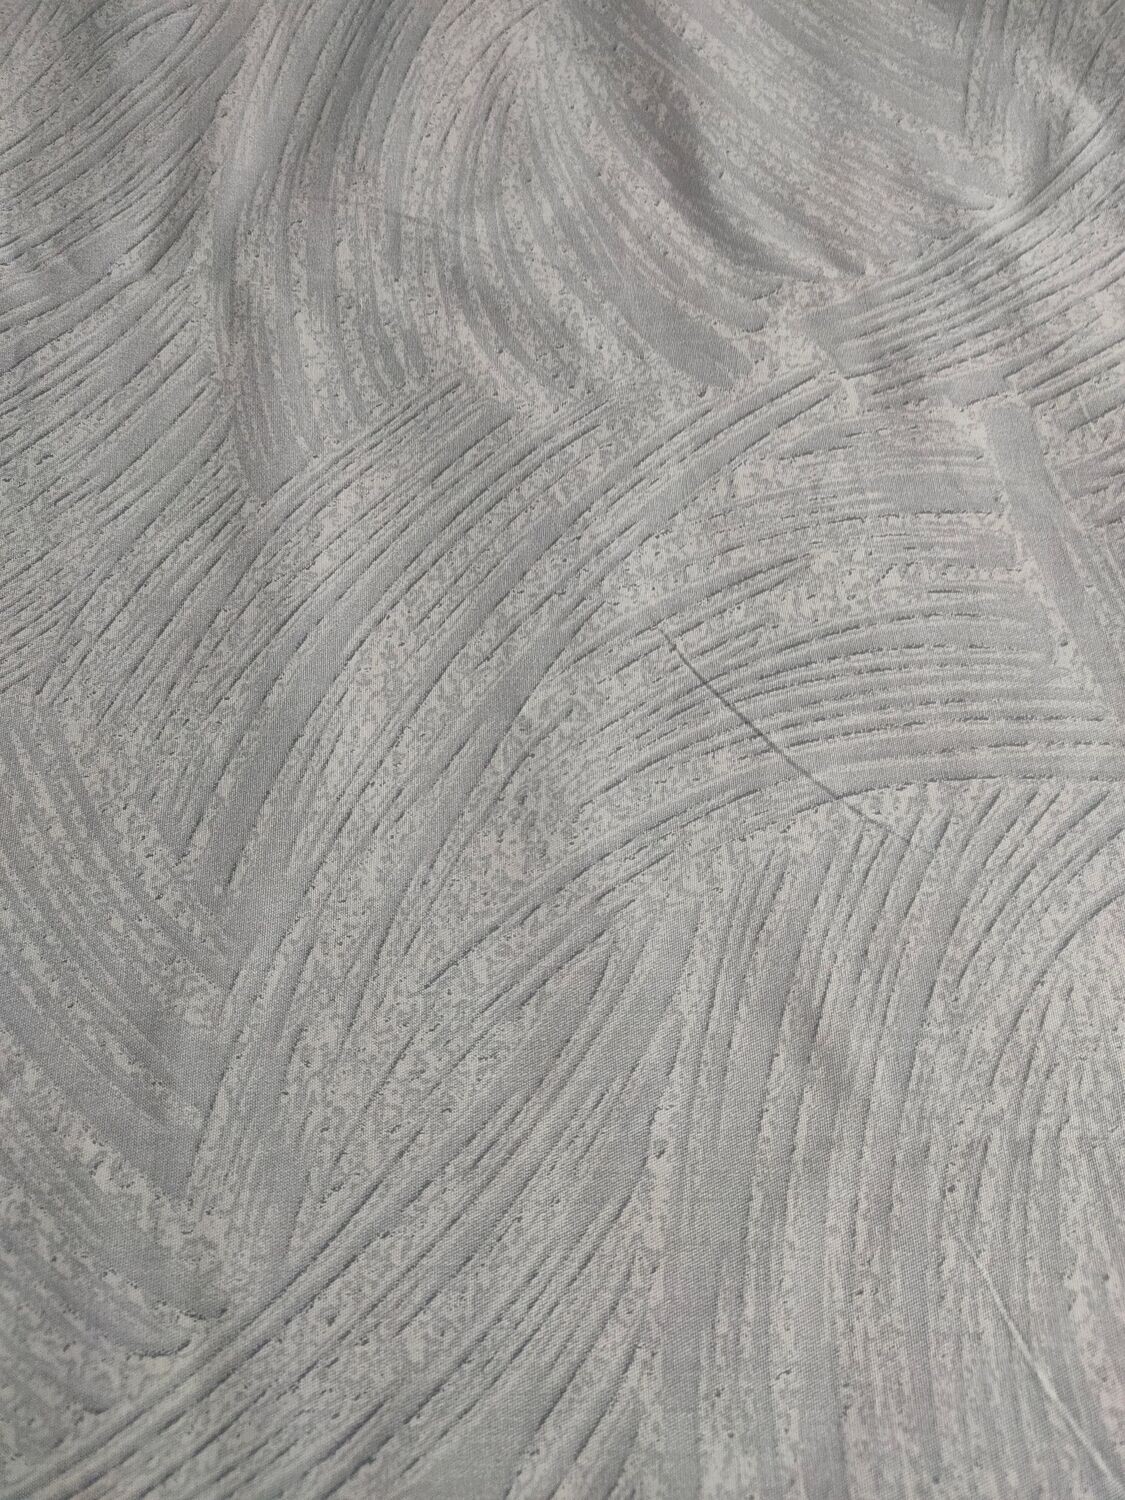 Backing Fabric - Grey Swirl